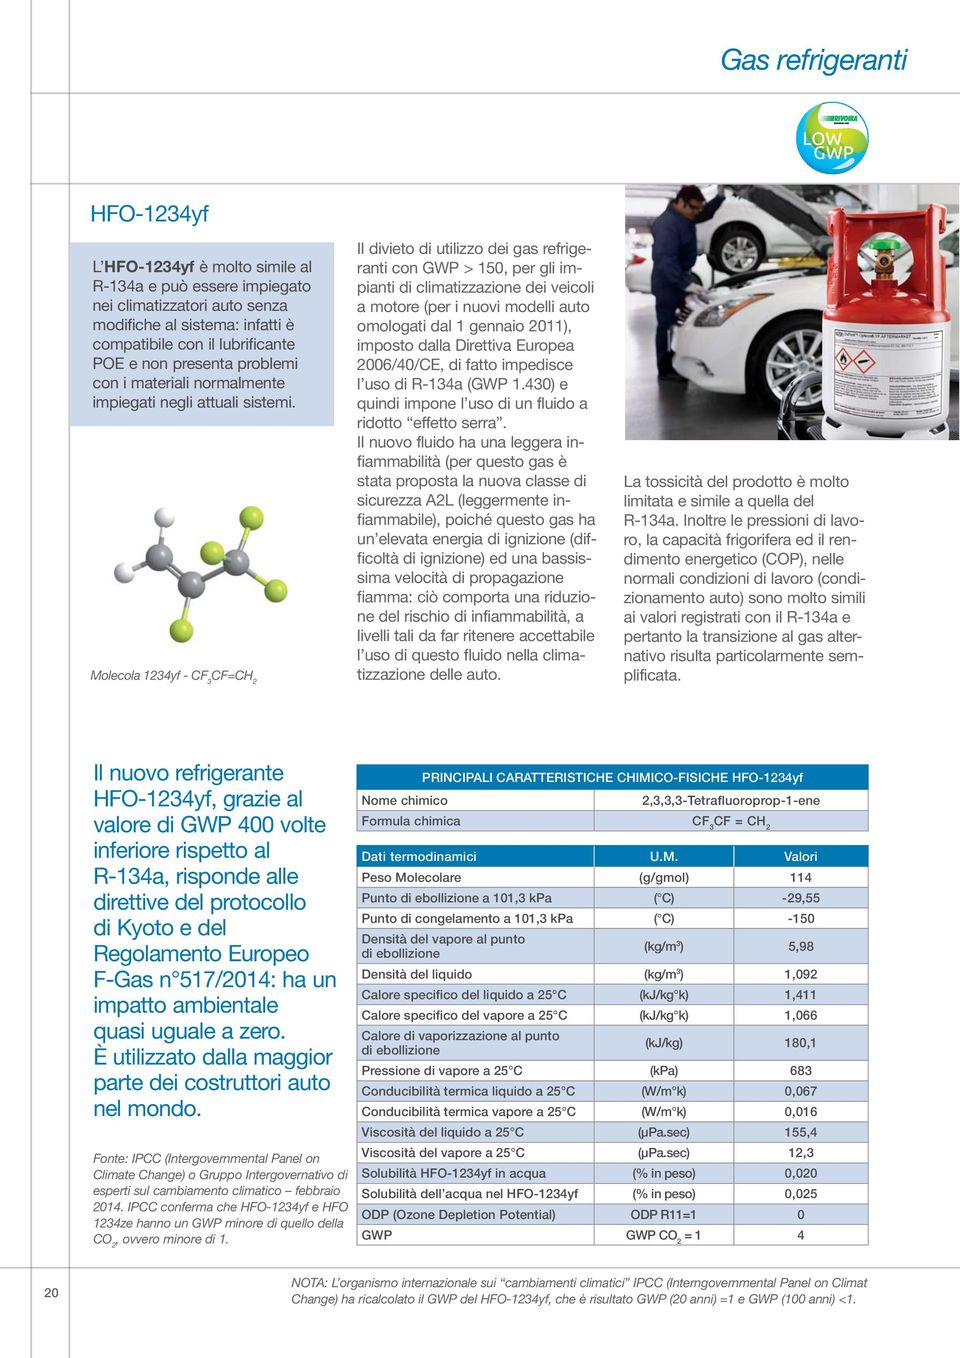 Molecola 1234yf - CF 3 CF=CH 2 Il divieto di utilizzo dei gas refrigeranti con GWP > 150, per gli impianti di climatizzazione dei veicoli a motore (per i nuovi modelli auto omologati dal 1 gennaio